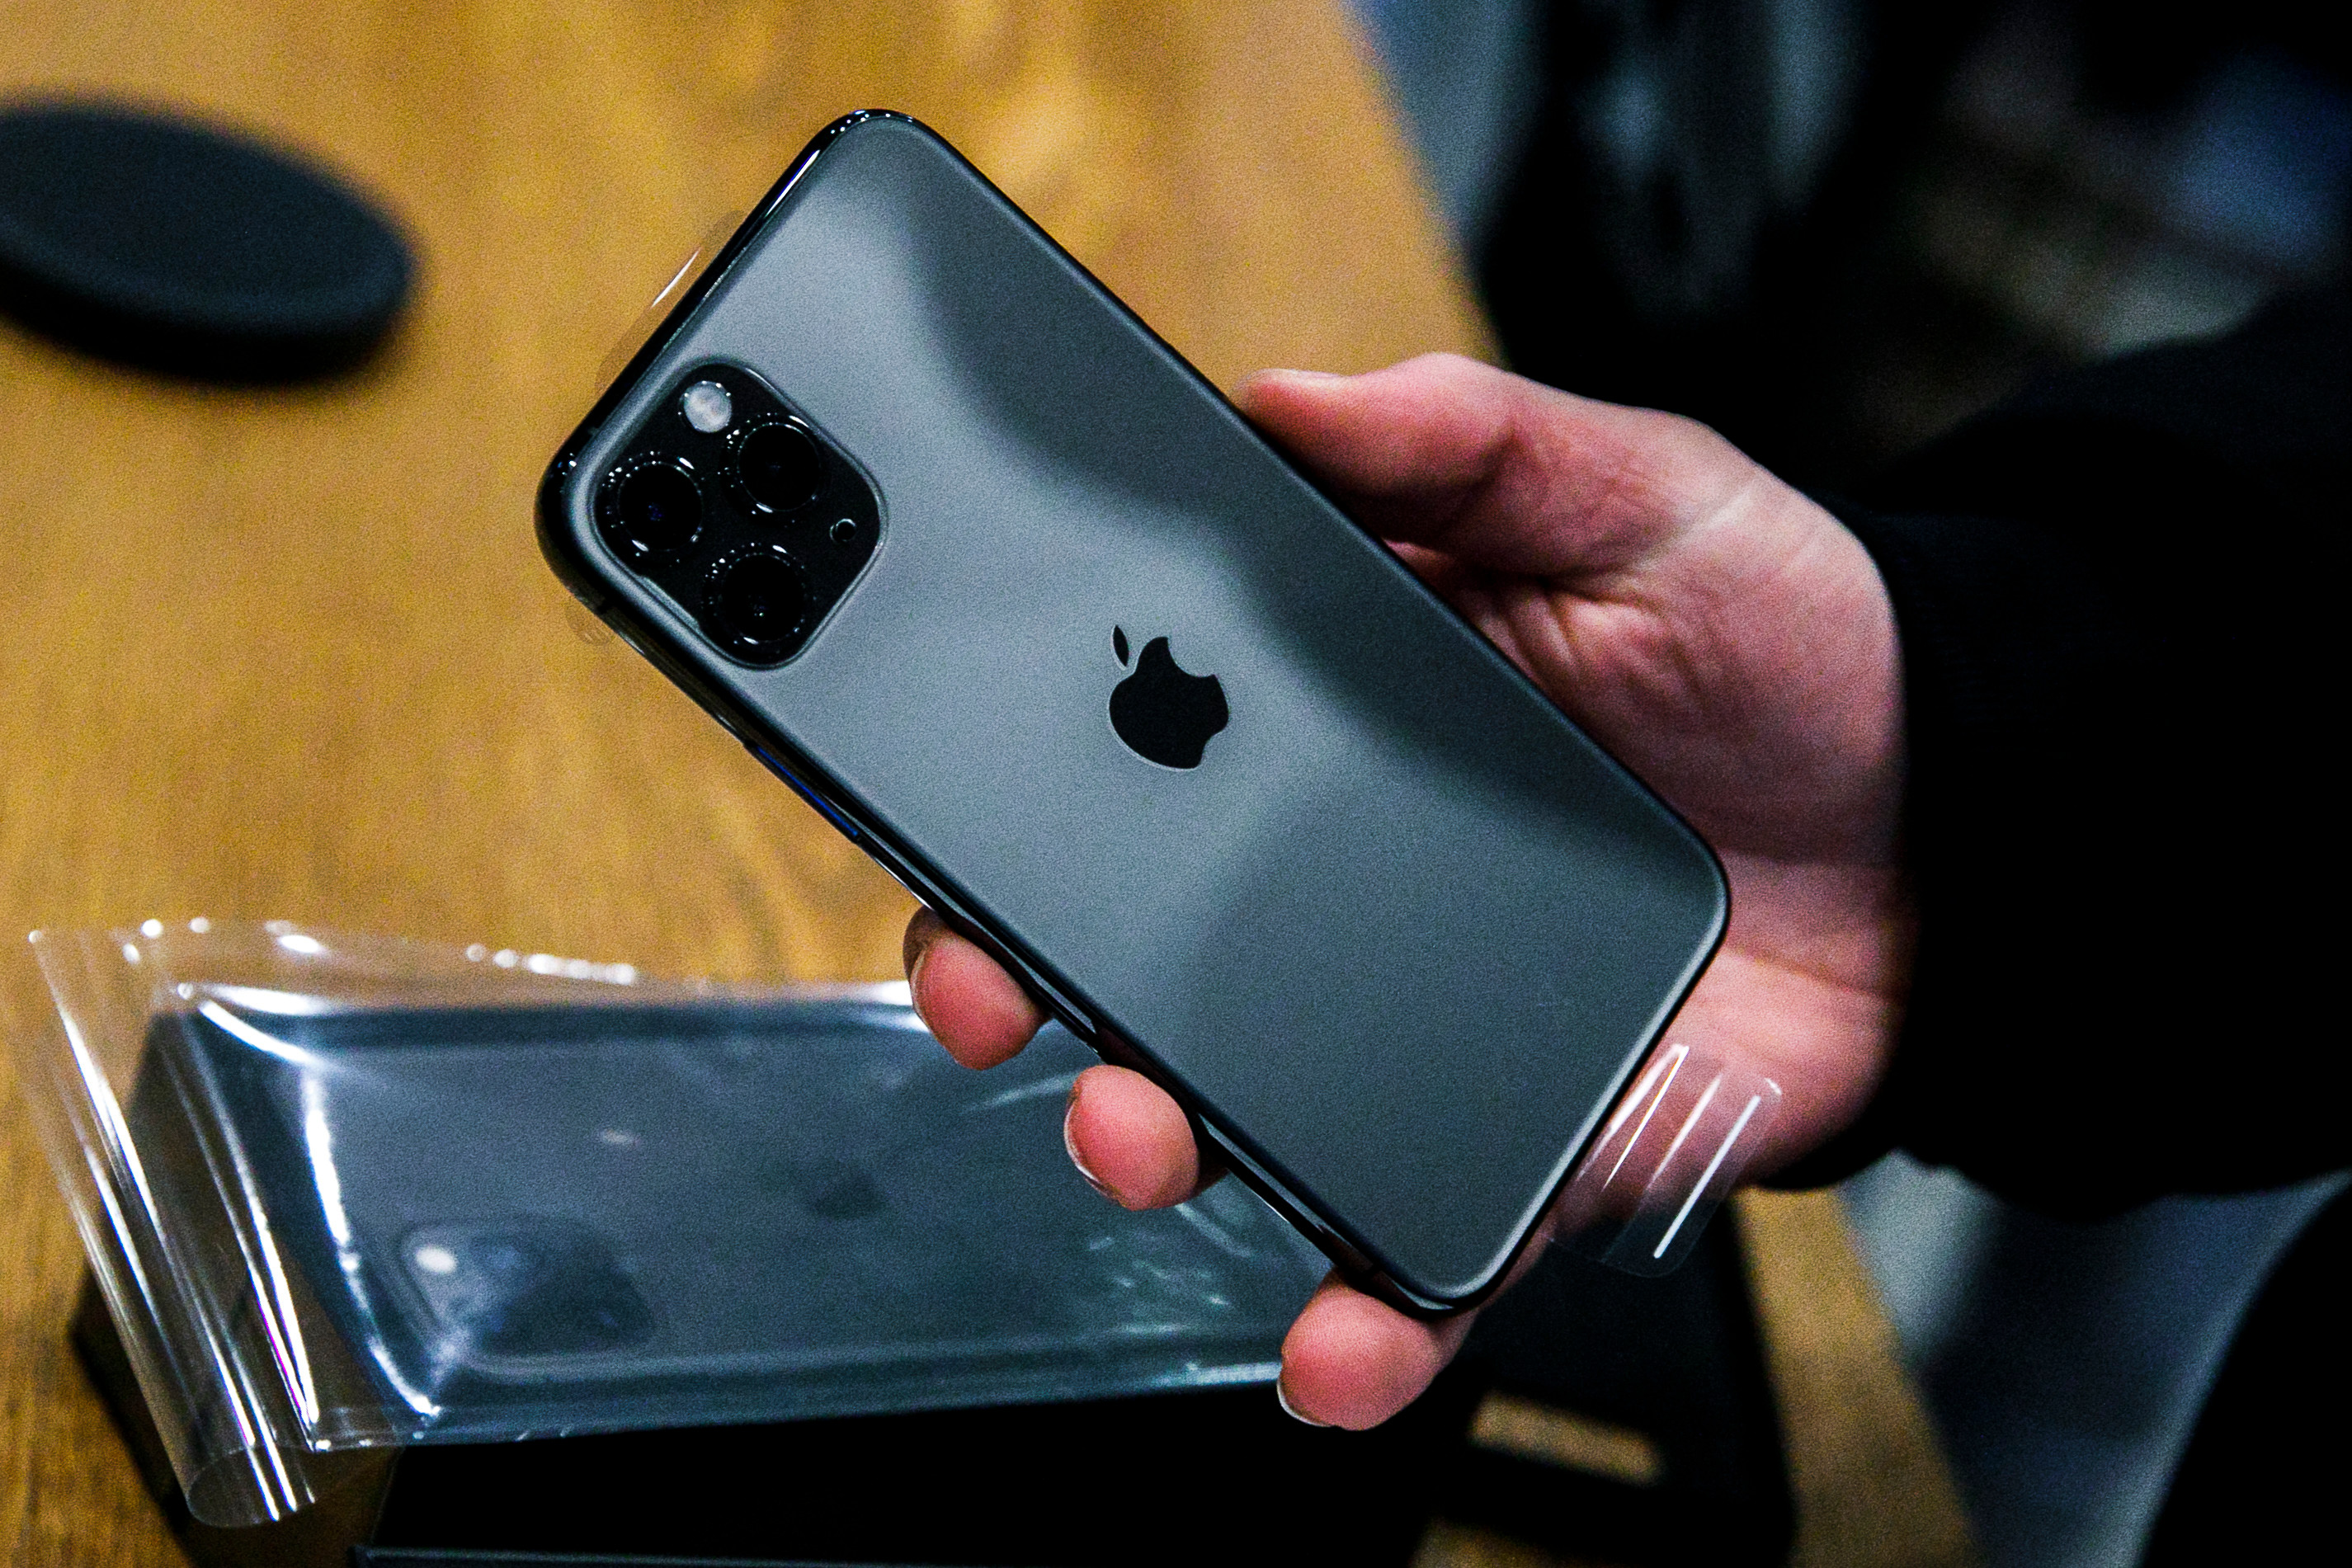  AppleIPhone 11 đã được chứng minh rất phổ biến, nhưng iPhone 12 có vẻ là một bản nâng cấp lớn